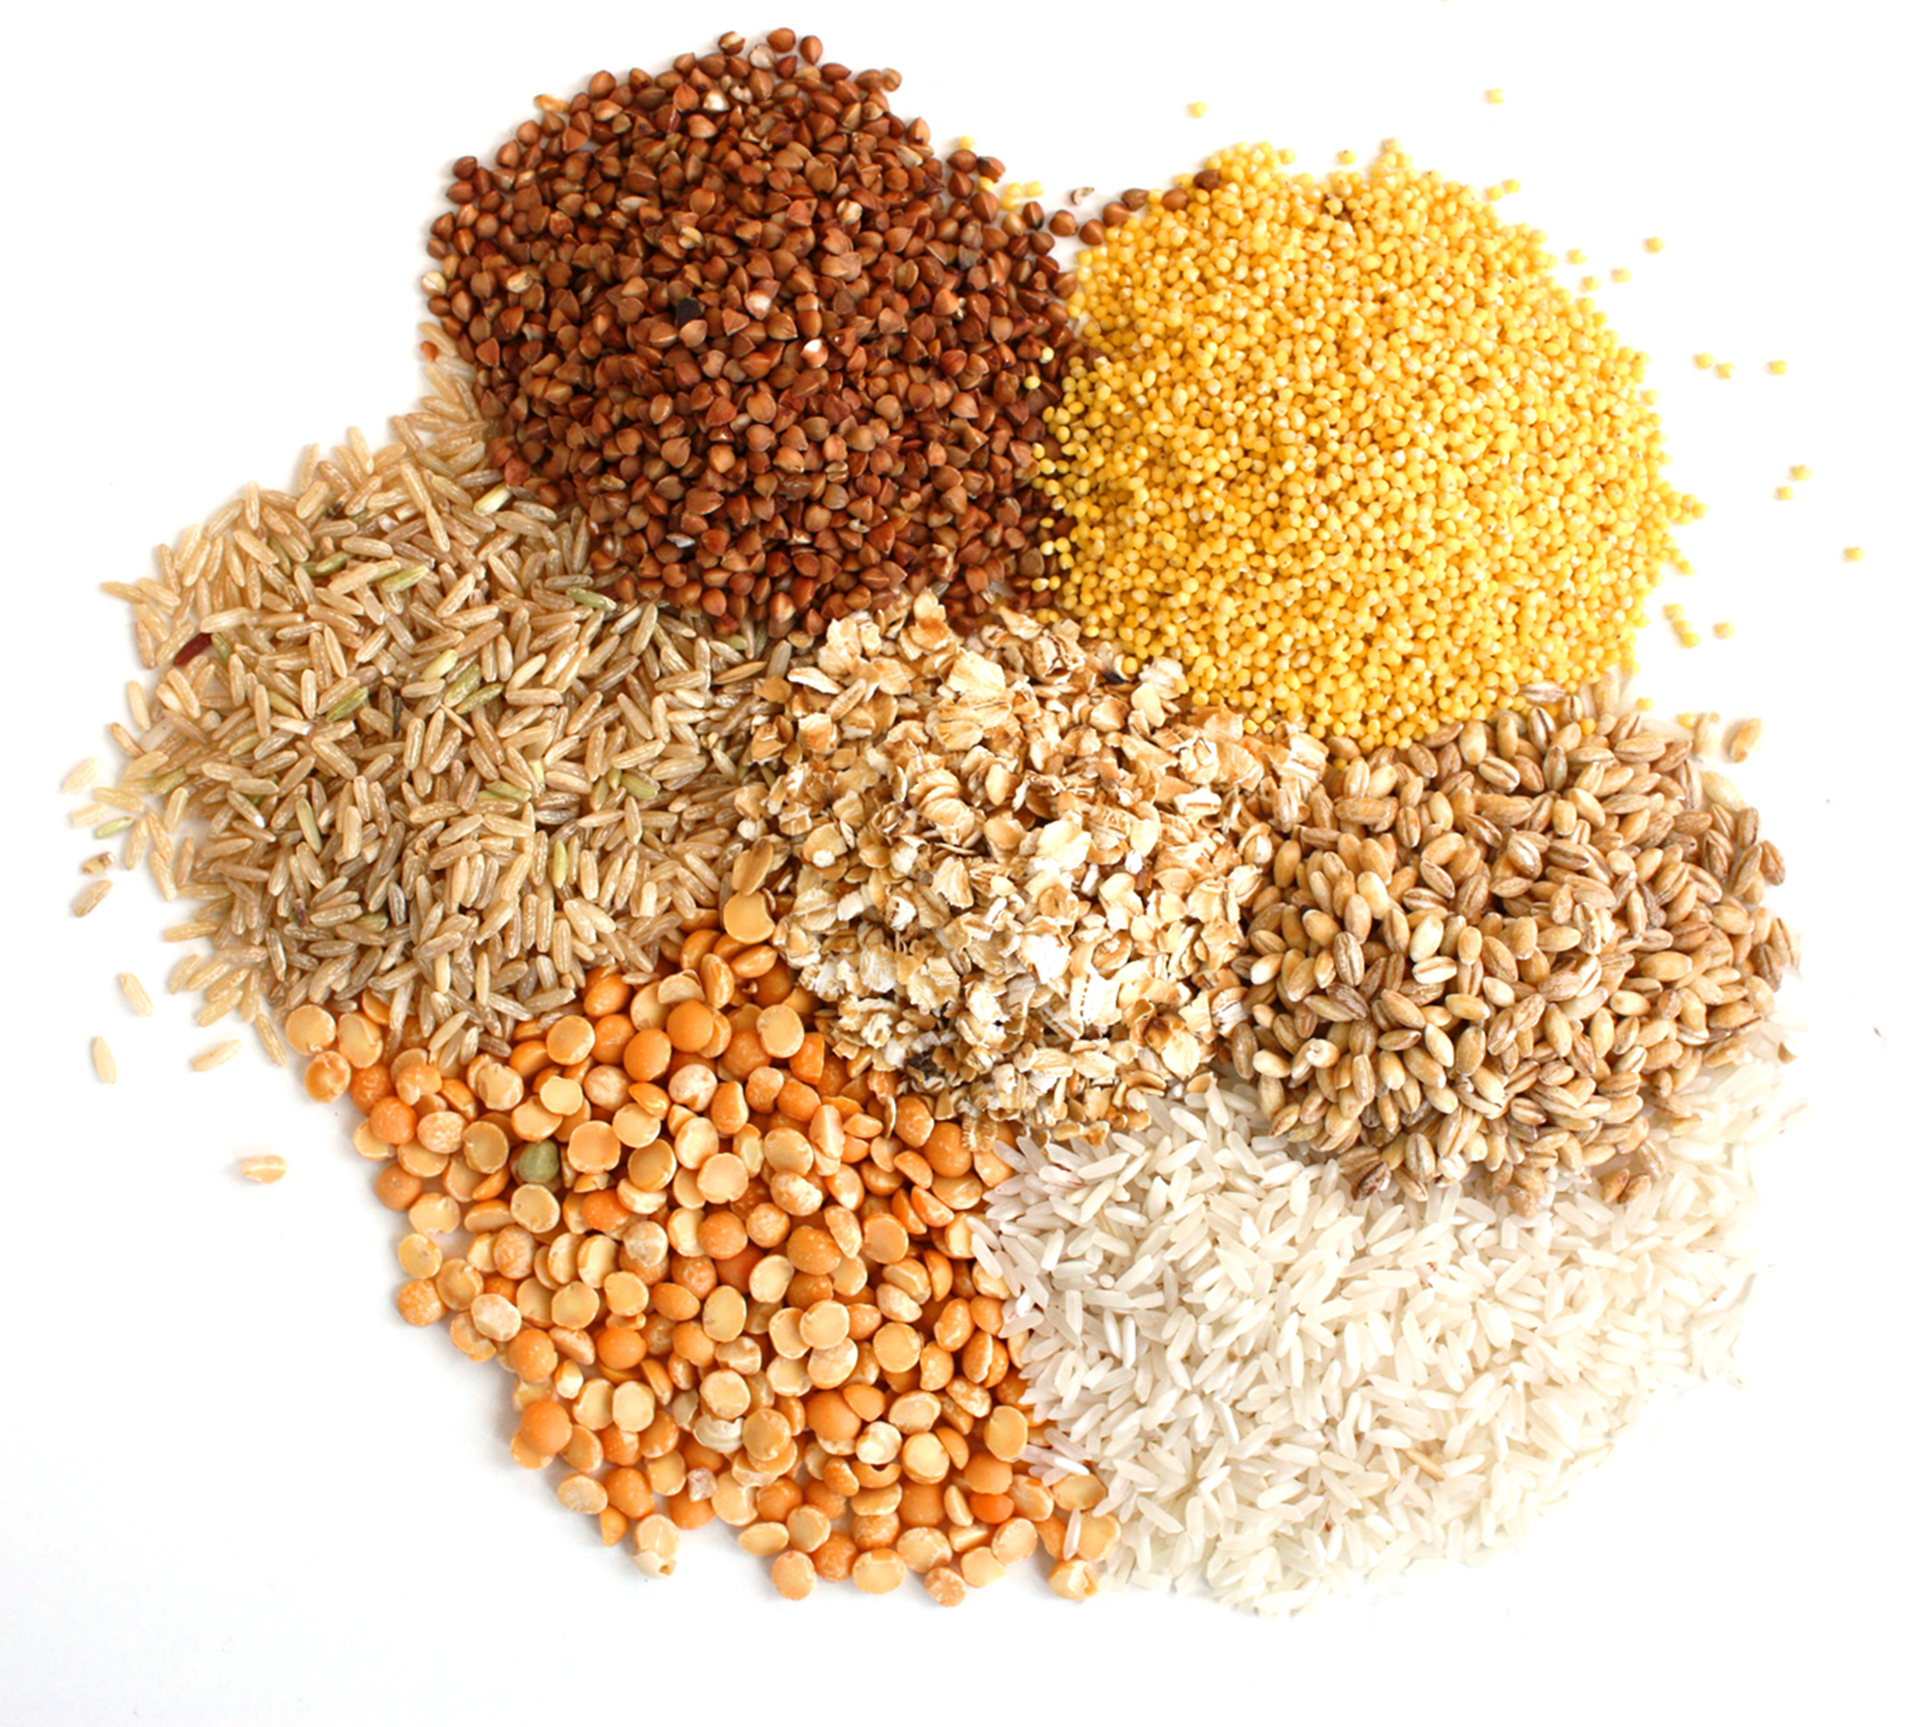 Getreidevielfalt: Hafer, Weizen, Reis und Co.